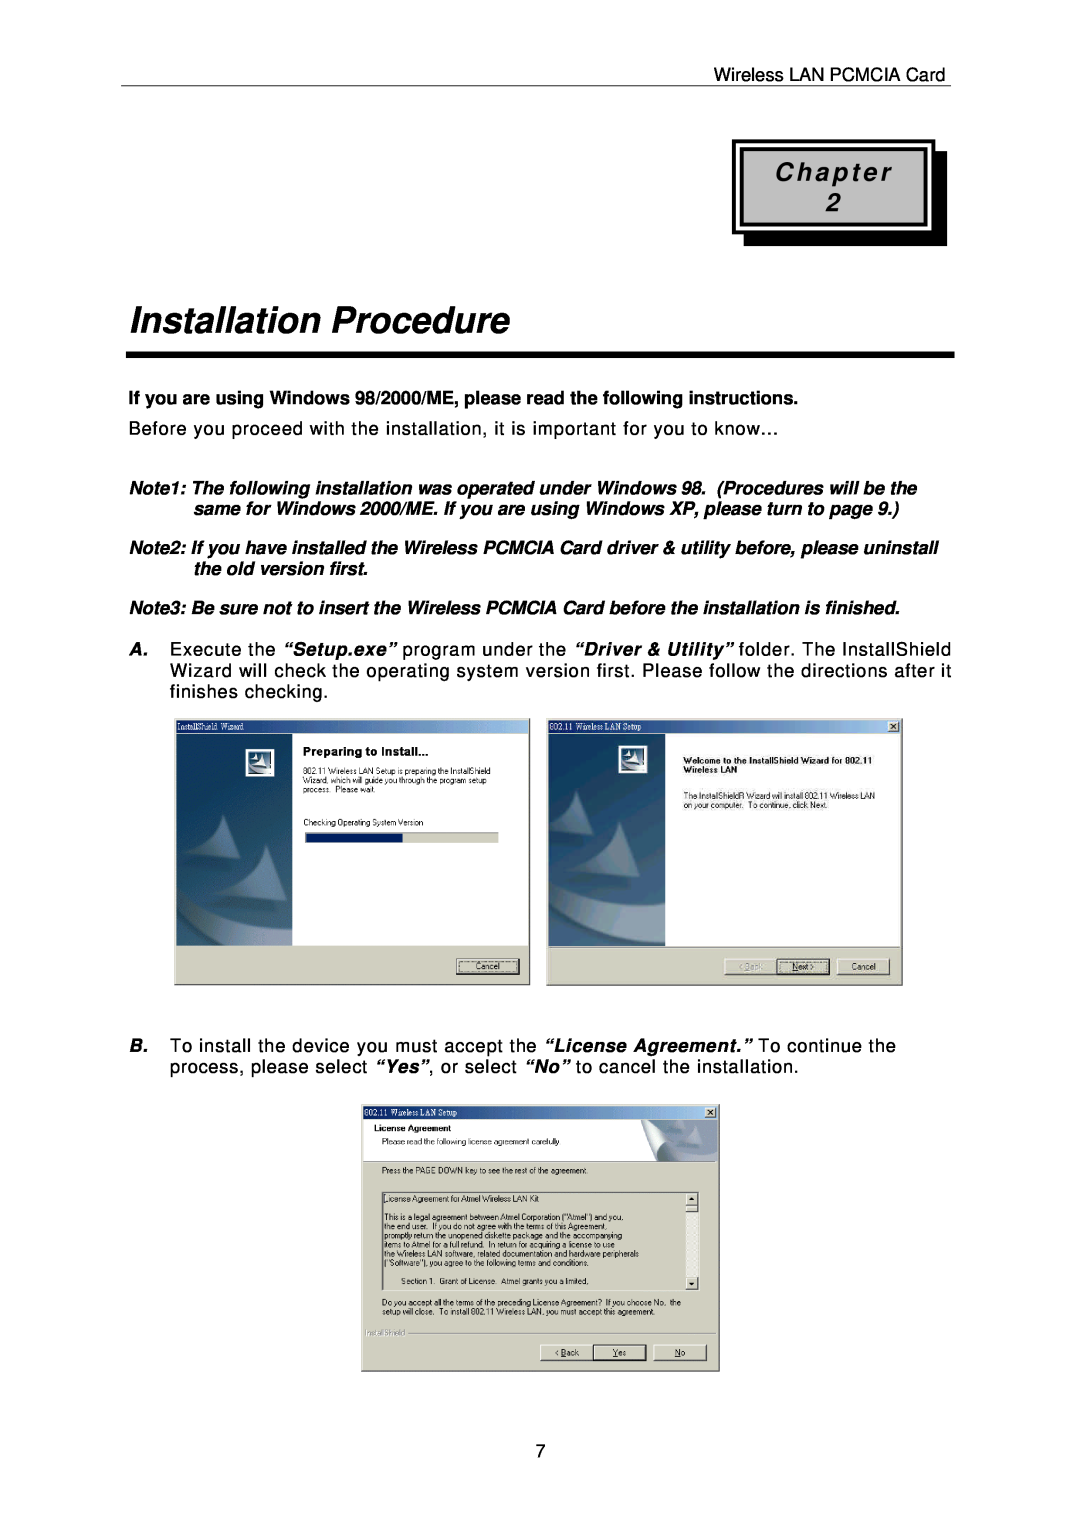 IBM PCMCIA Card user manual Installation Procedure, C h a p t e r 